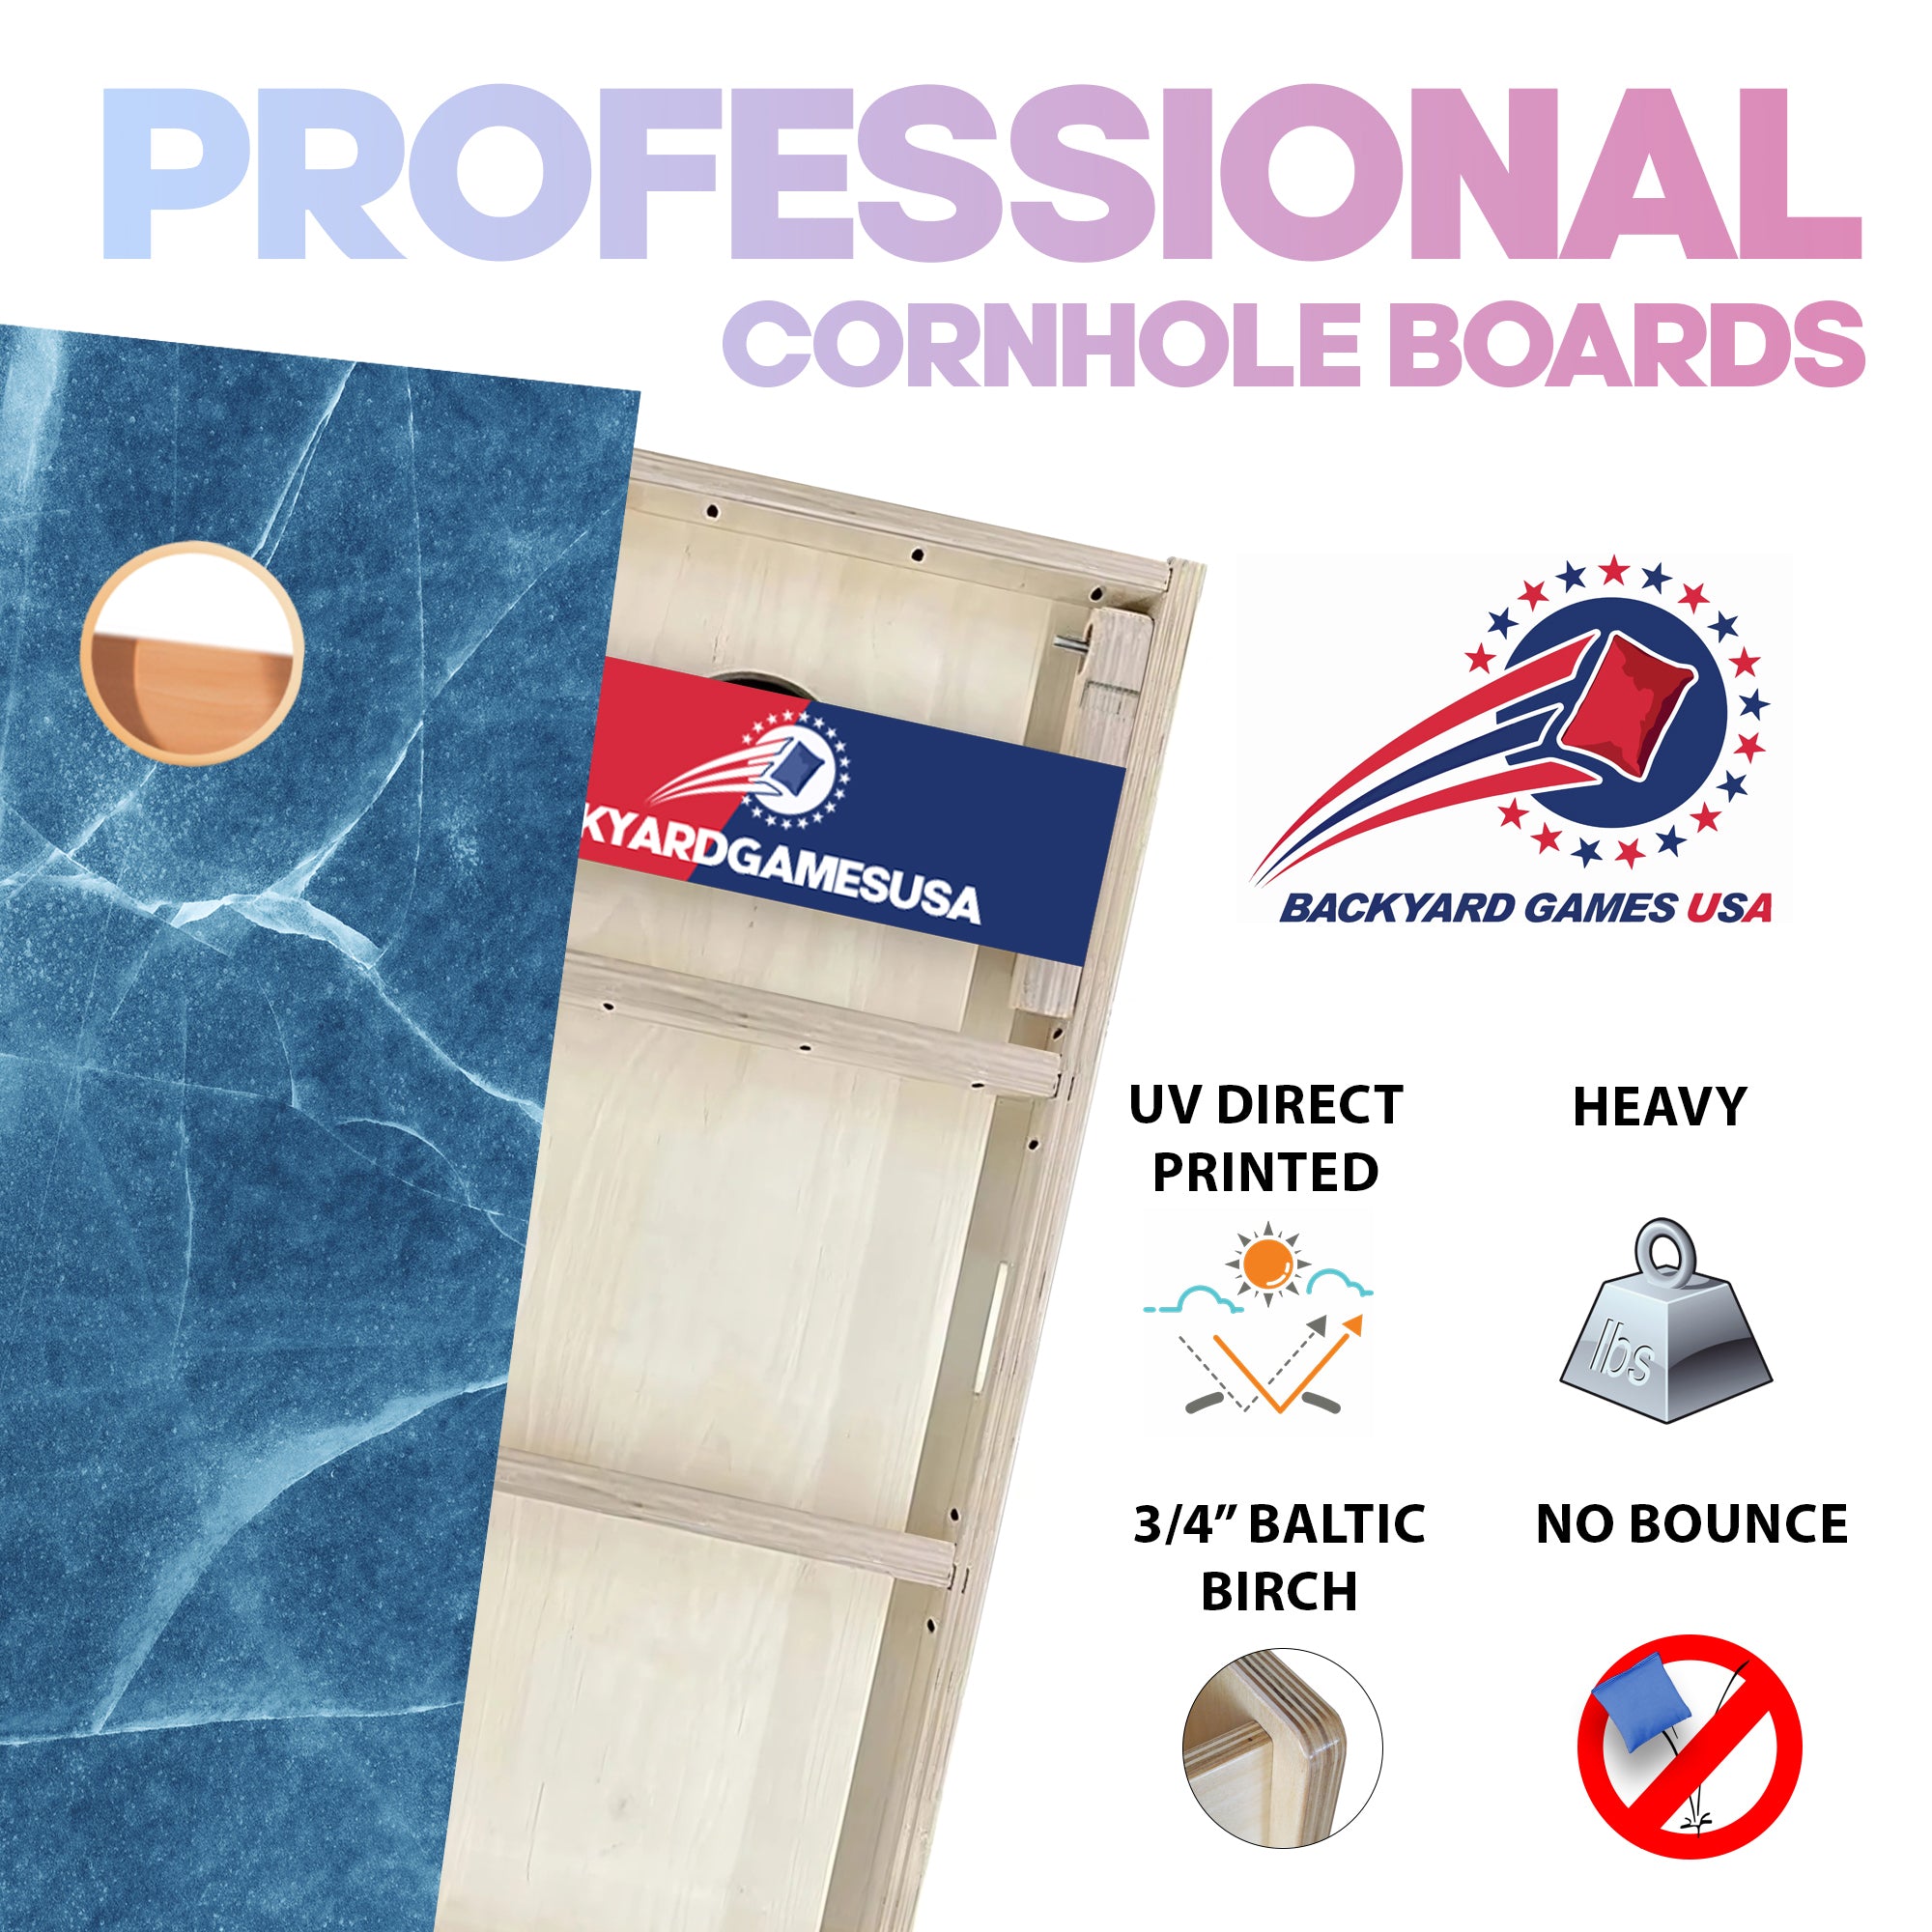 Cracked Ice Professional Cornhole Boards